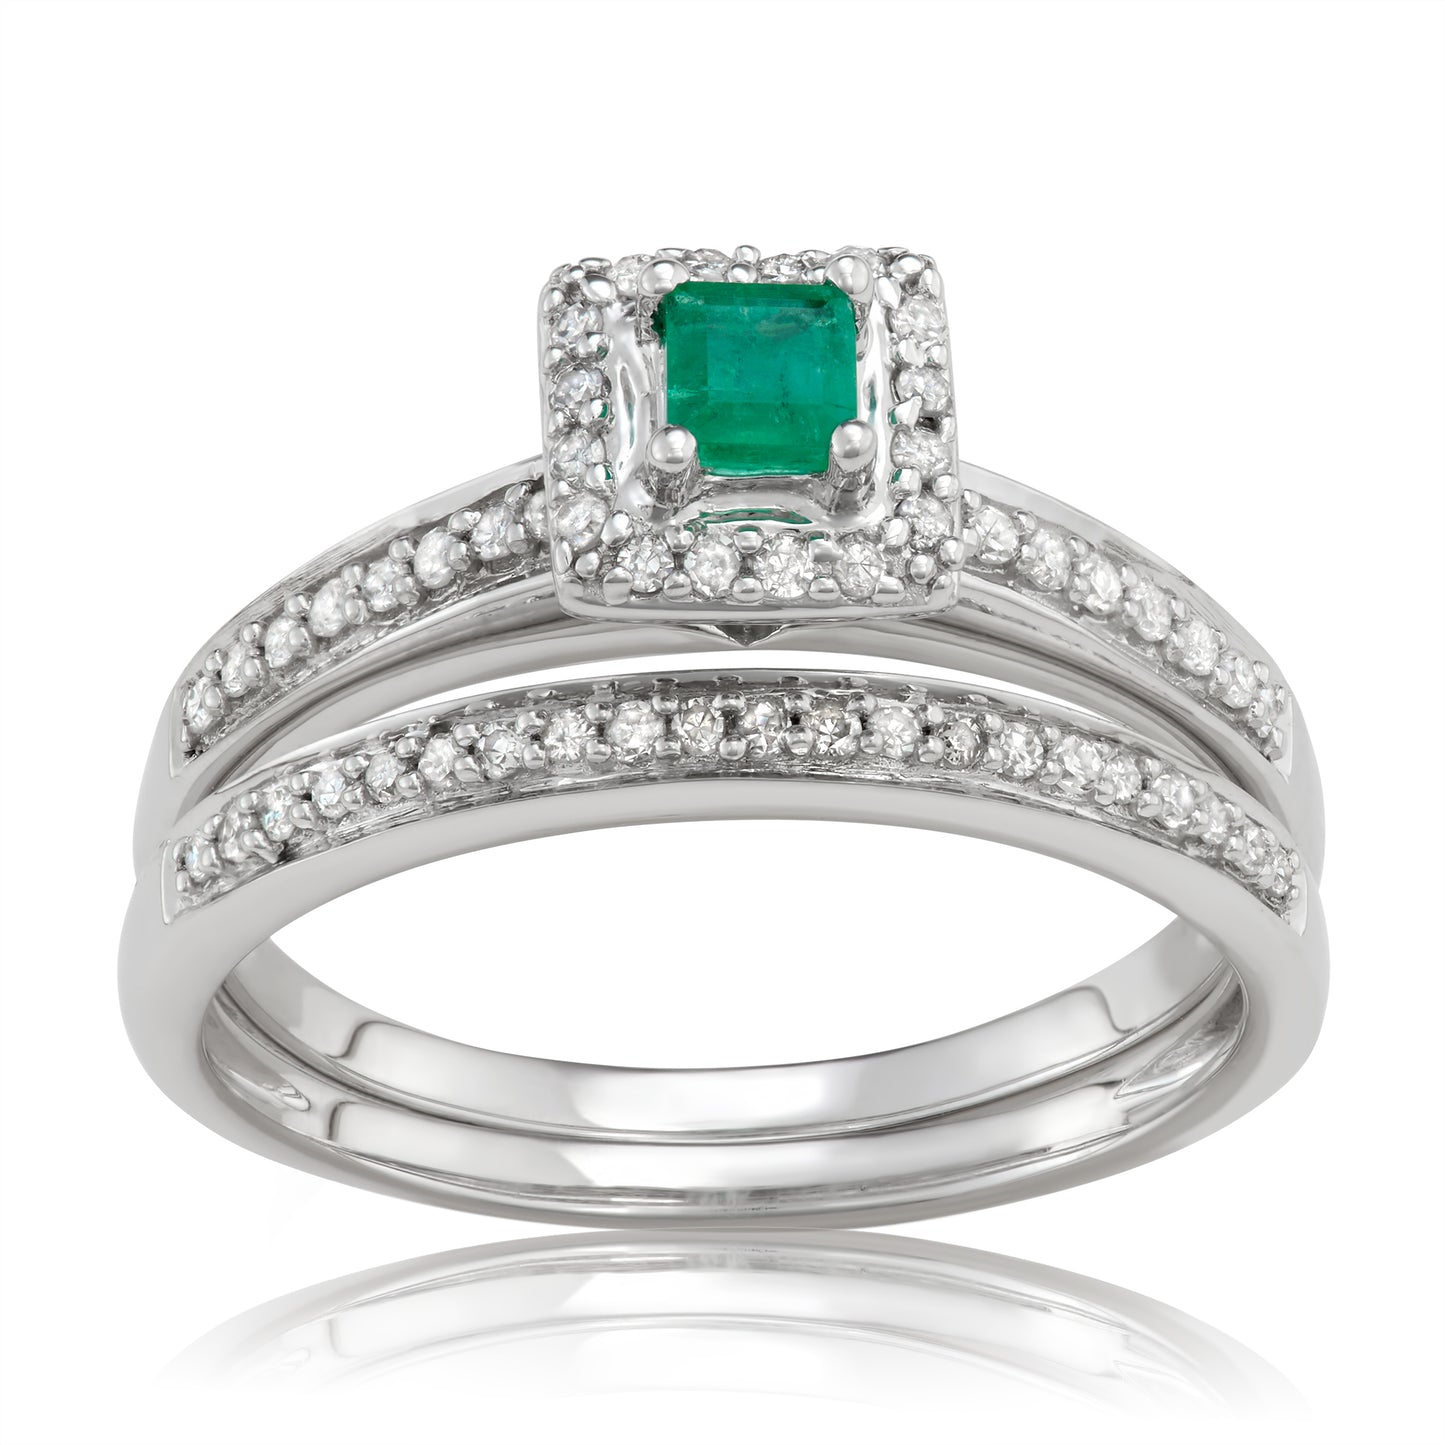 10K White Gold 0.50ct TW Emerald and White Diamond Bridal Set